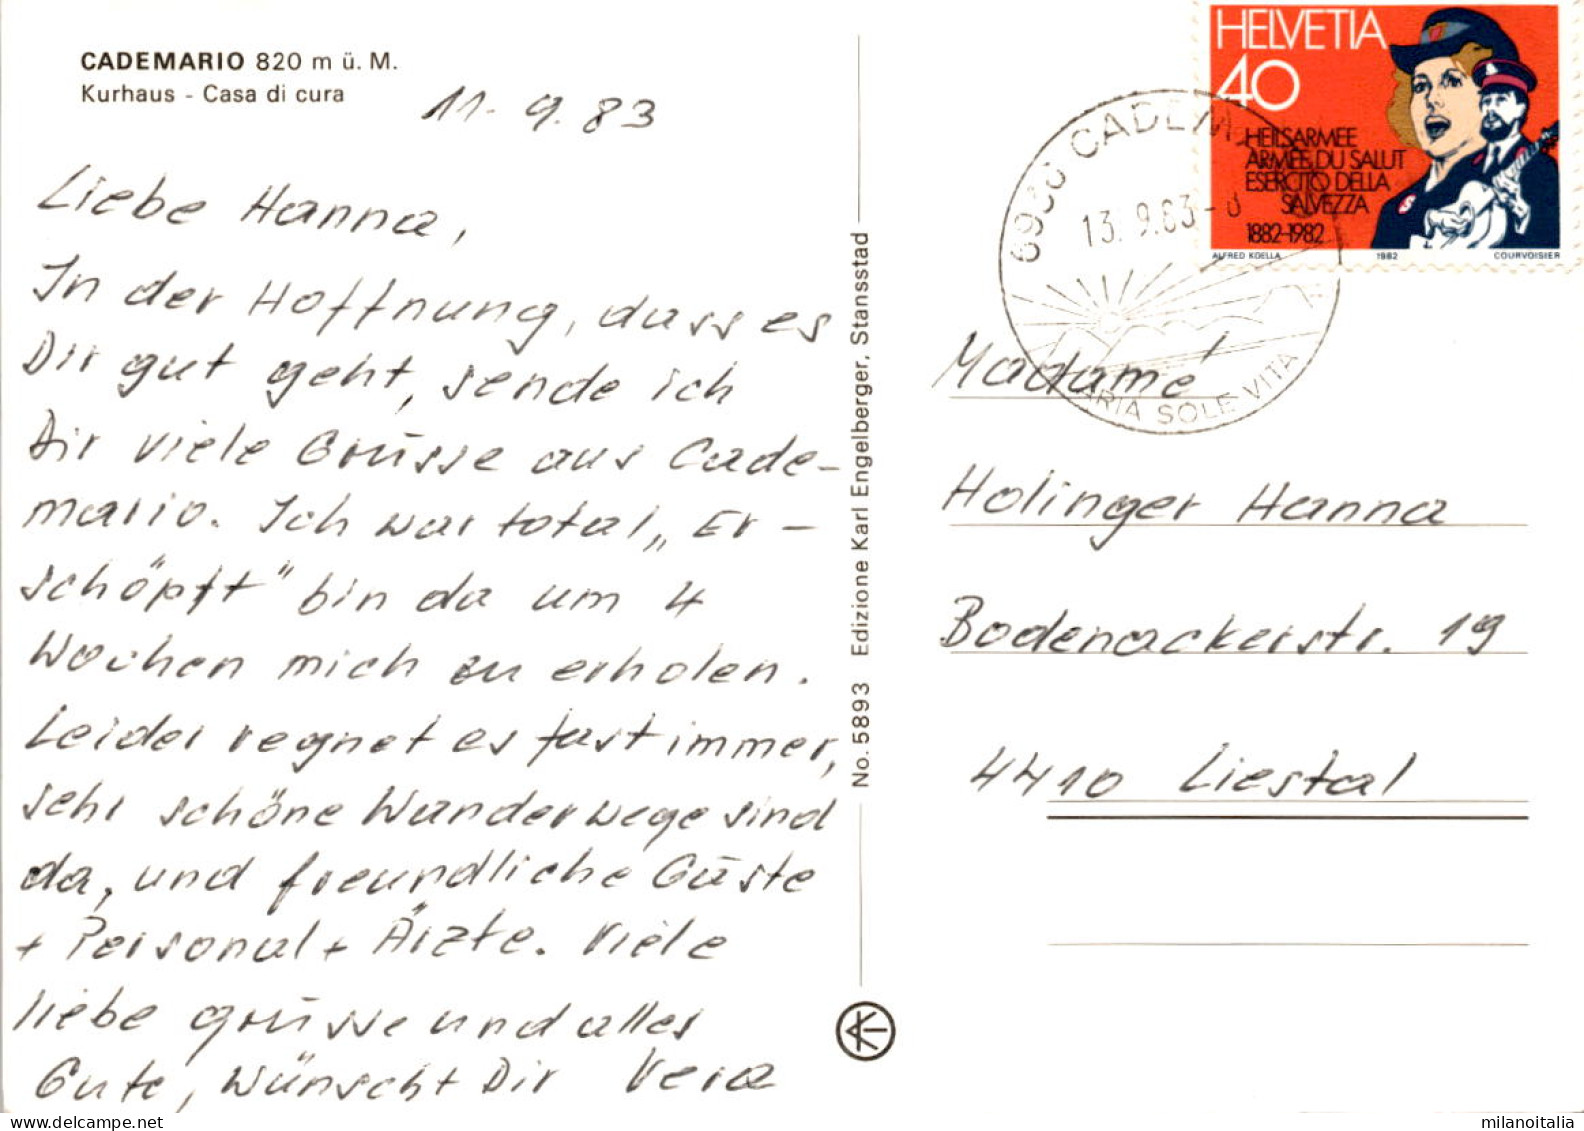 Cademario - Kurhaus (5893) * 13. 9. 1983 - Cademario